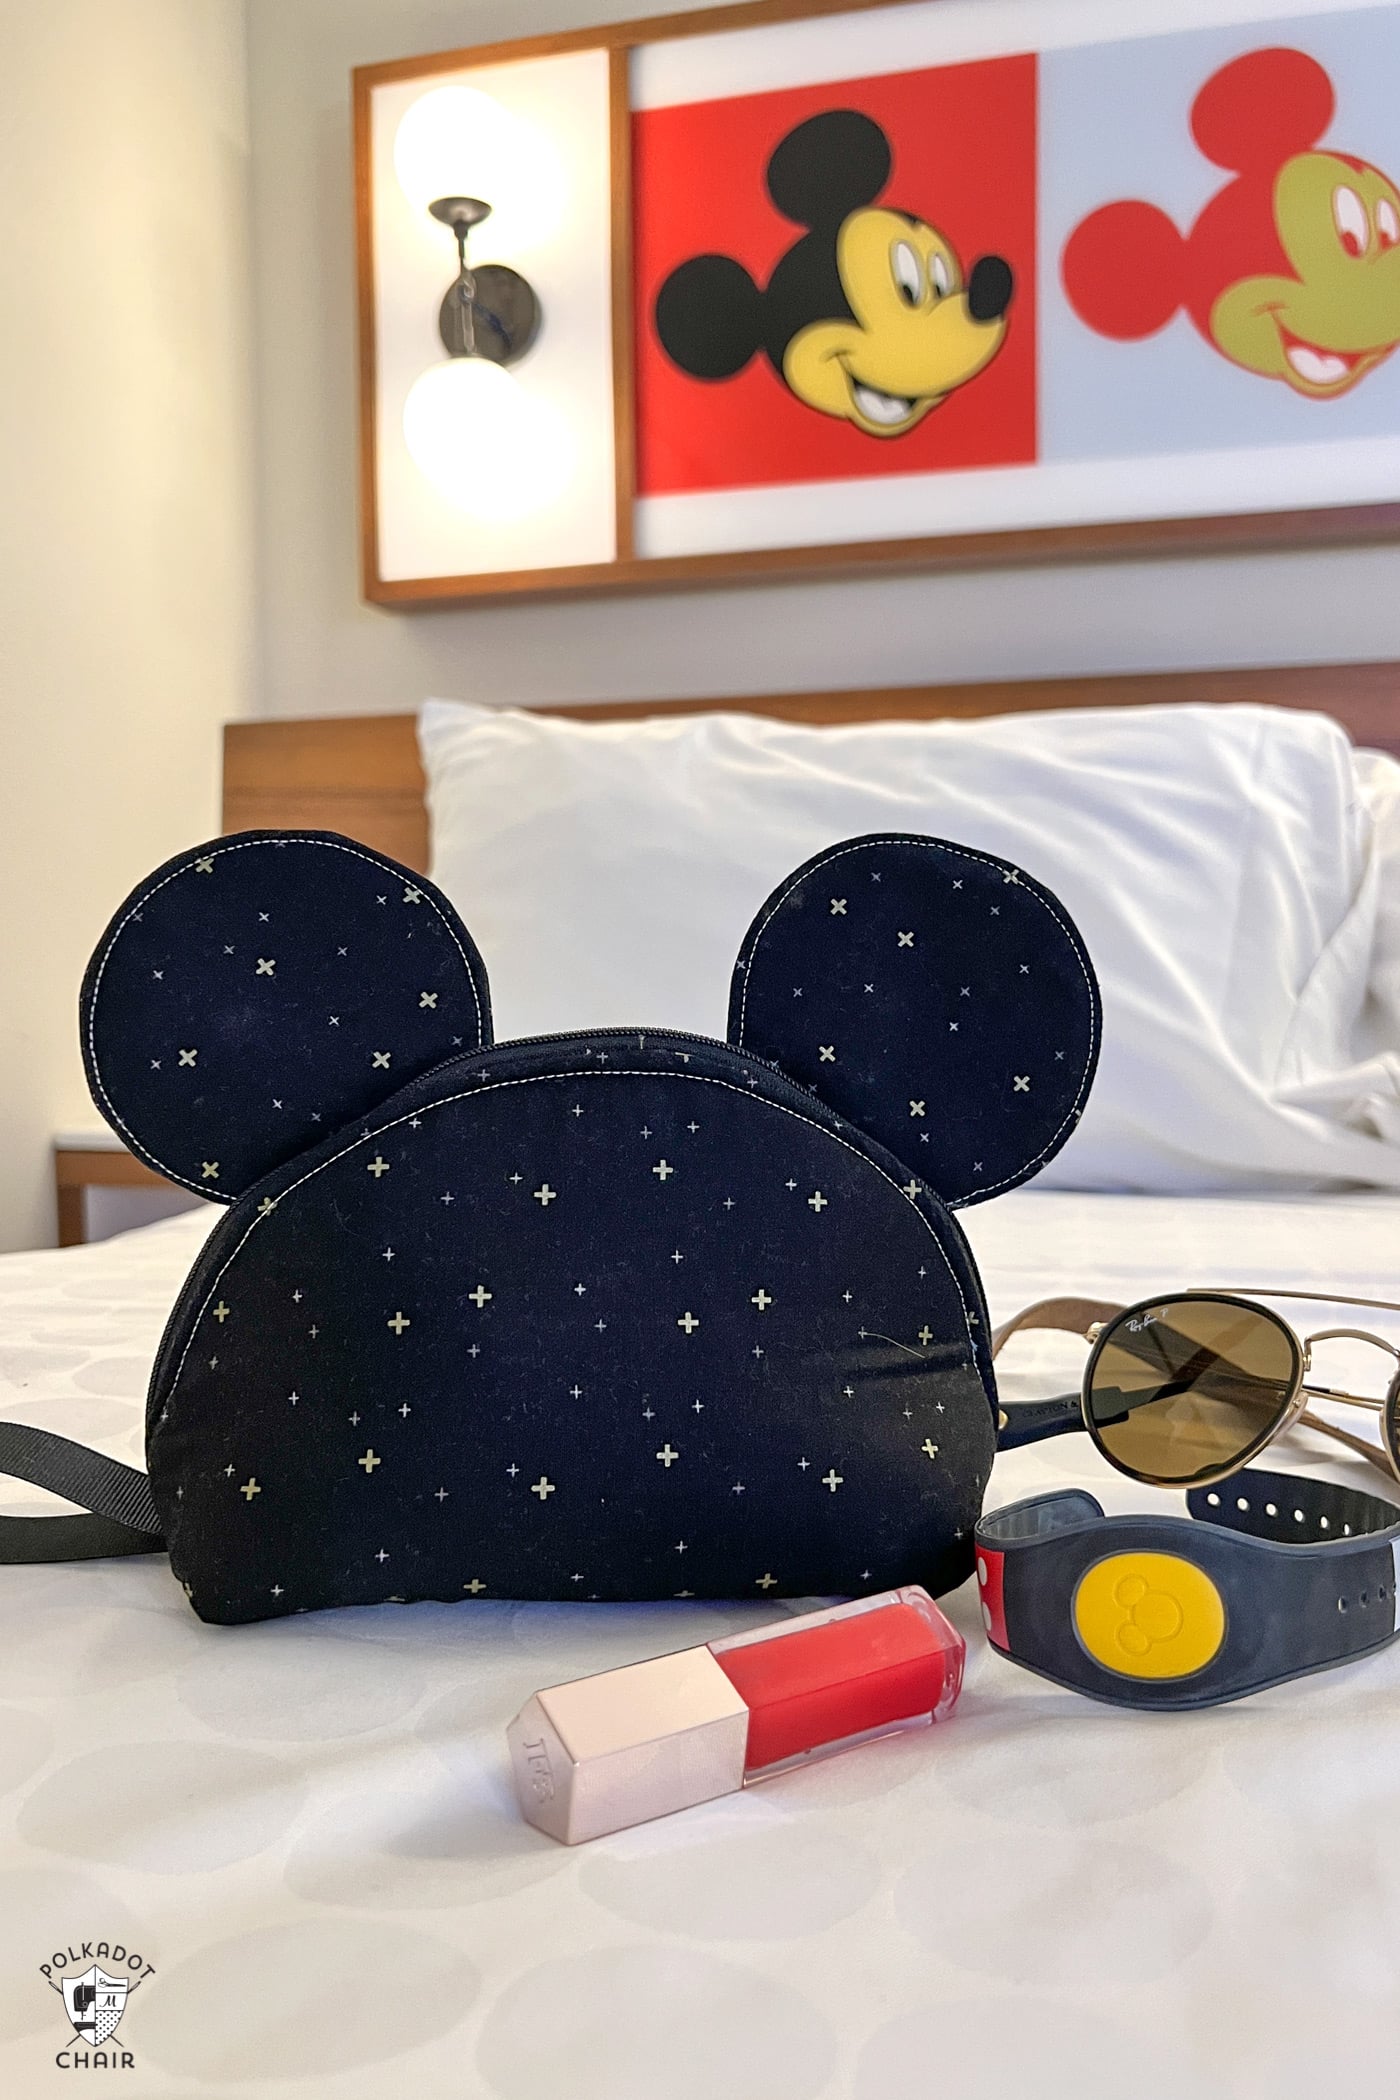 sac zippé souris noire sur le lit devant l'art de Mickey Mouse